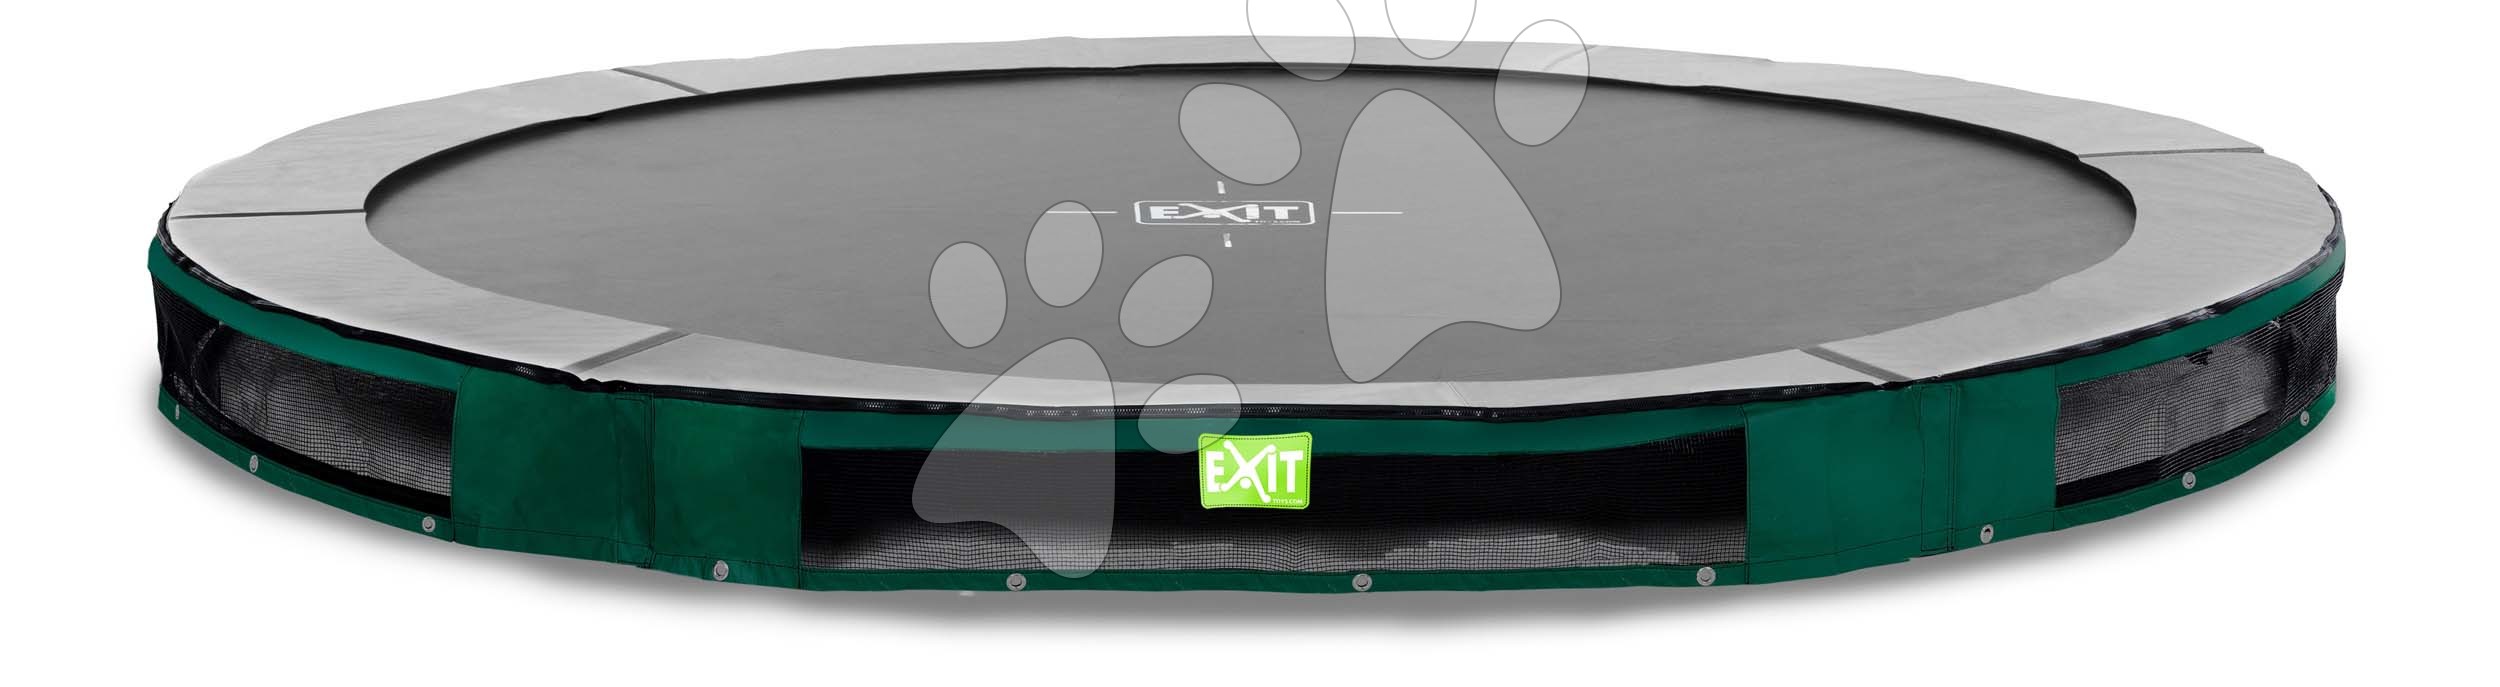 Trampolína Elegant Premium Ground Sports Green Exit Toys prízemná okrúhla 305 cm priemer zelená